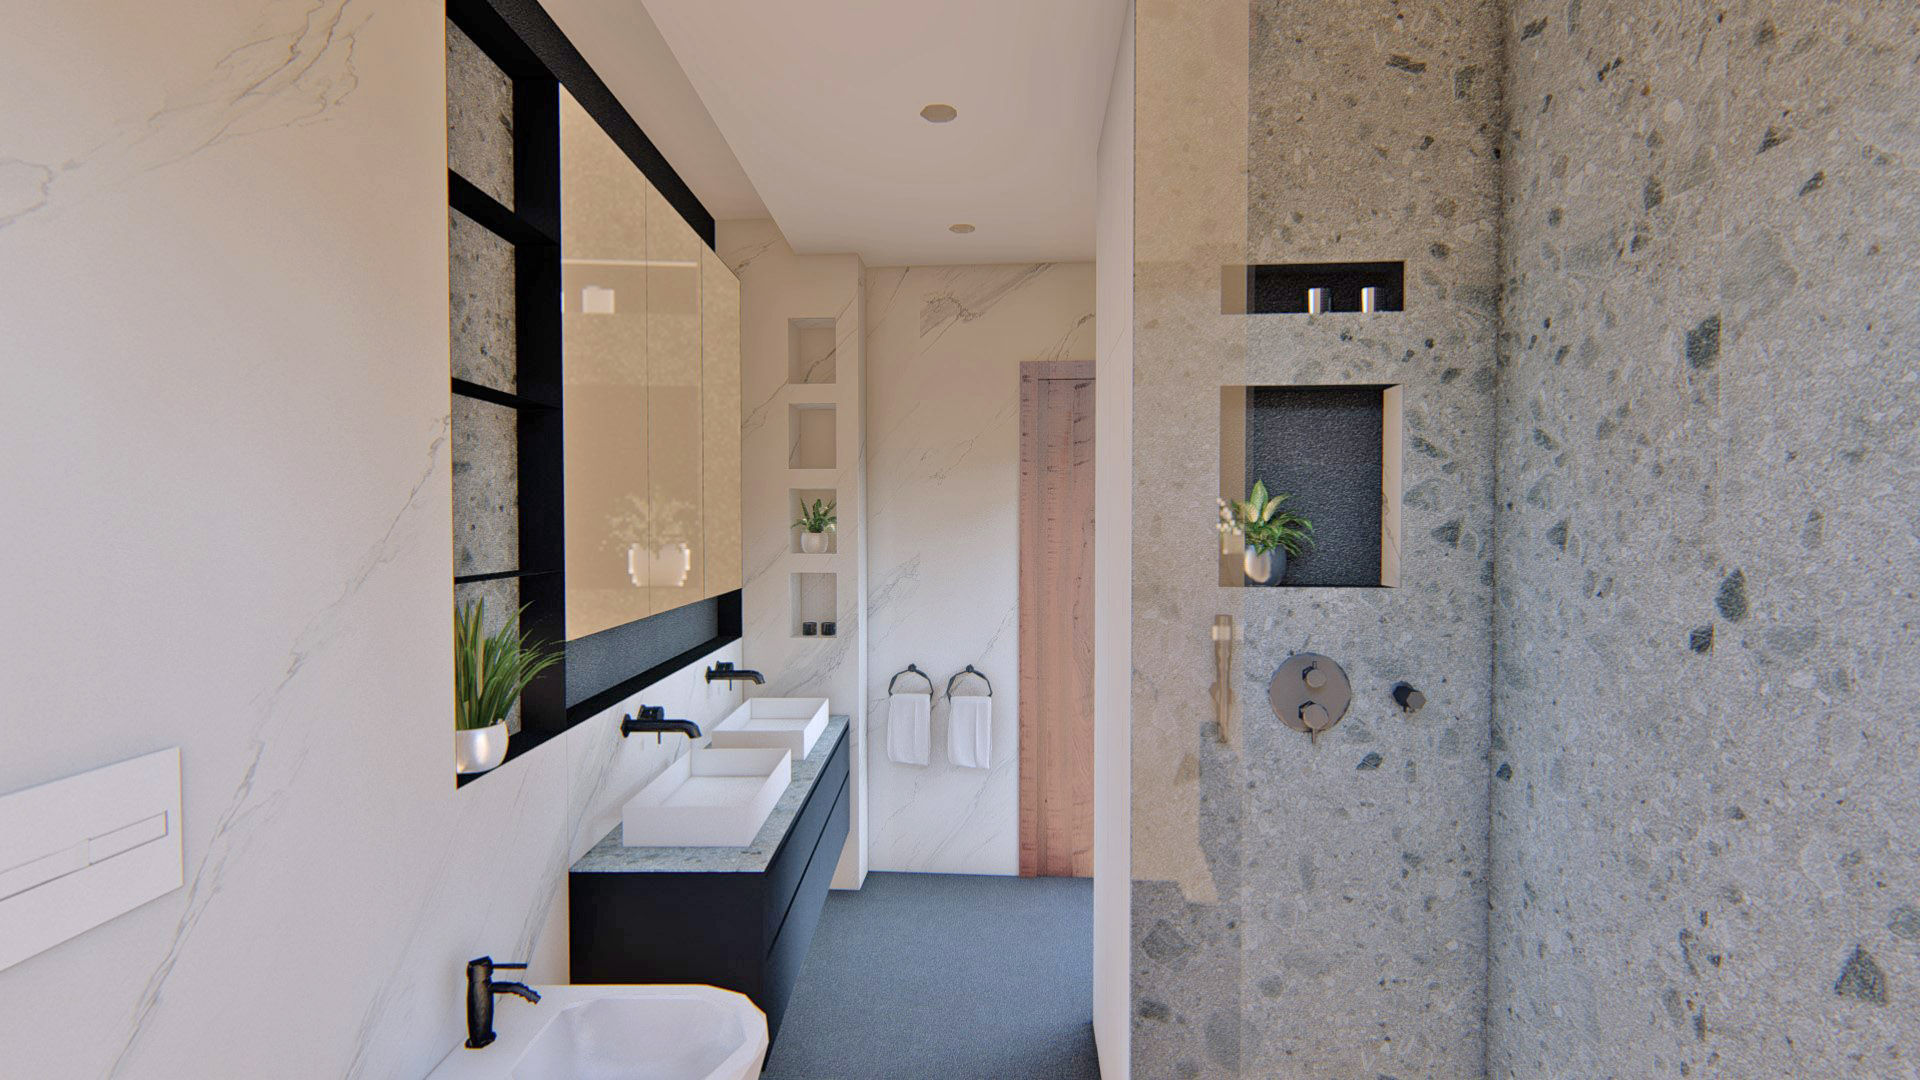 Ahorro energético Arquitectura Sostenible e Interiorismo | a-nat Baños de estilo minimalista baño, interiorismo, sostenibilidad, gris, negro, grifo negro